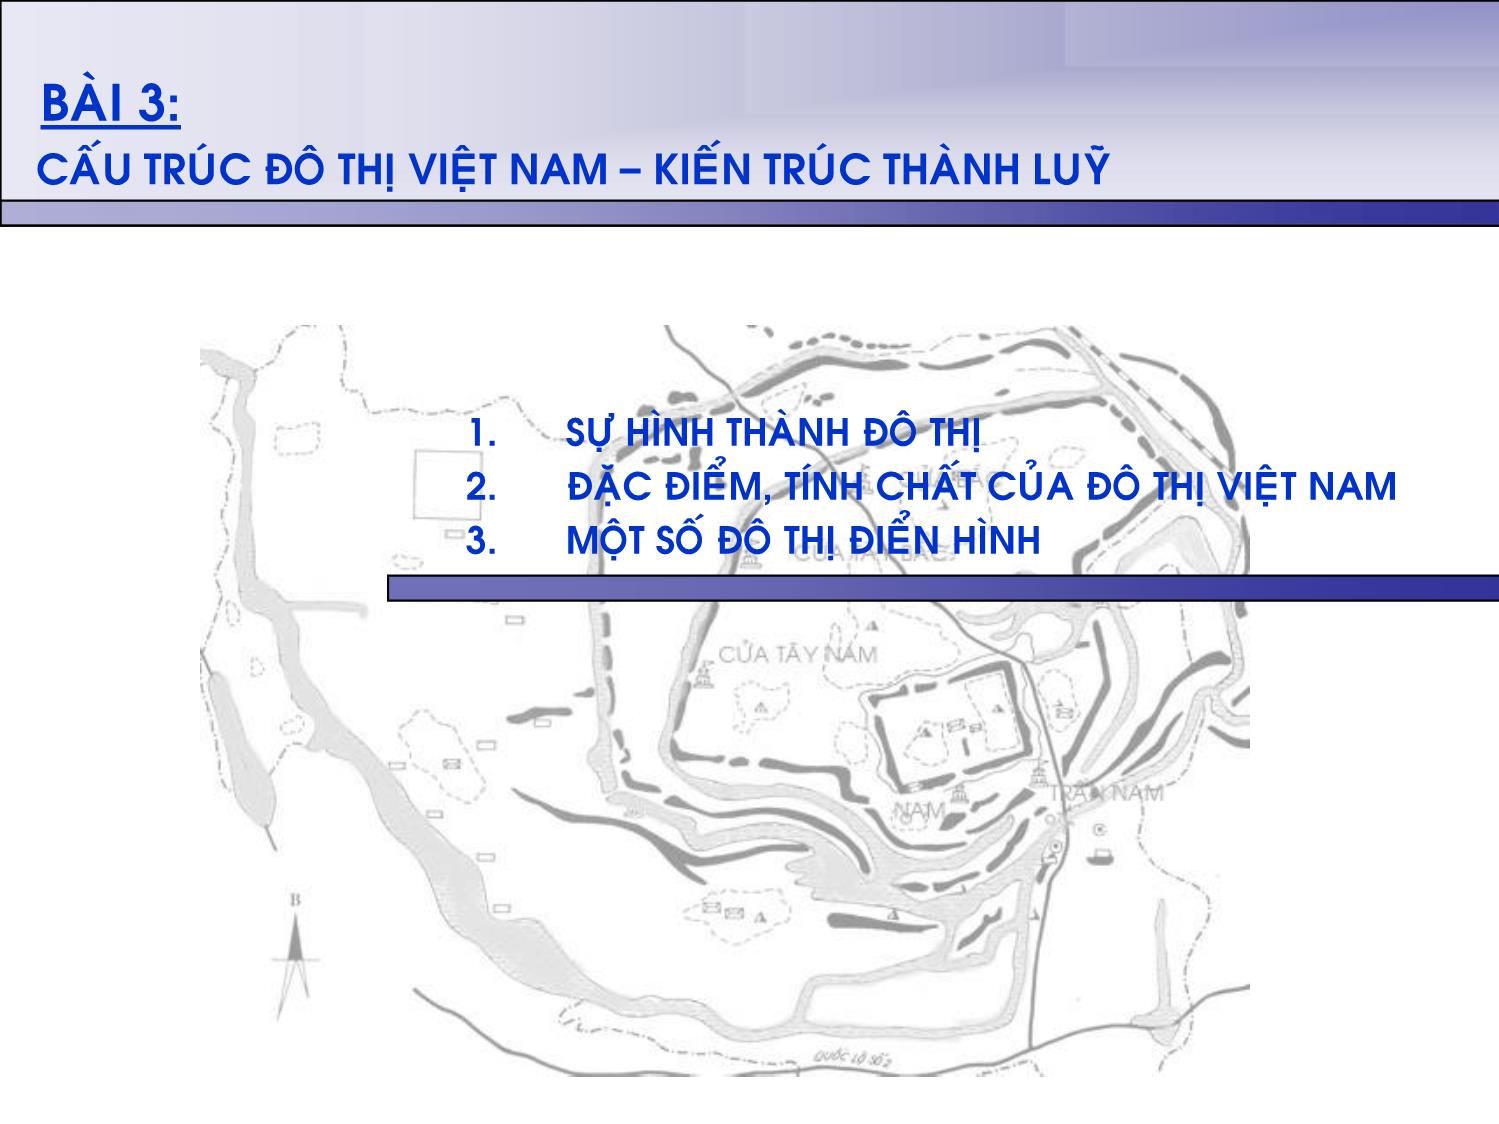 Bài giảng Lịch sủ kiến trúc Việt Nam - Bài 3: Cấu trúc đô thị Việt Nam. Kiến trúc thành lũy trang 2